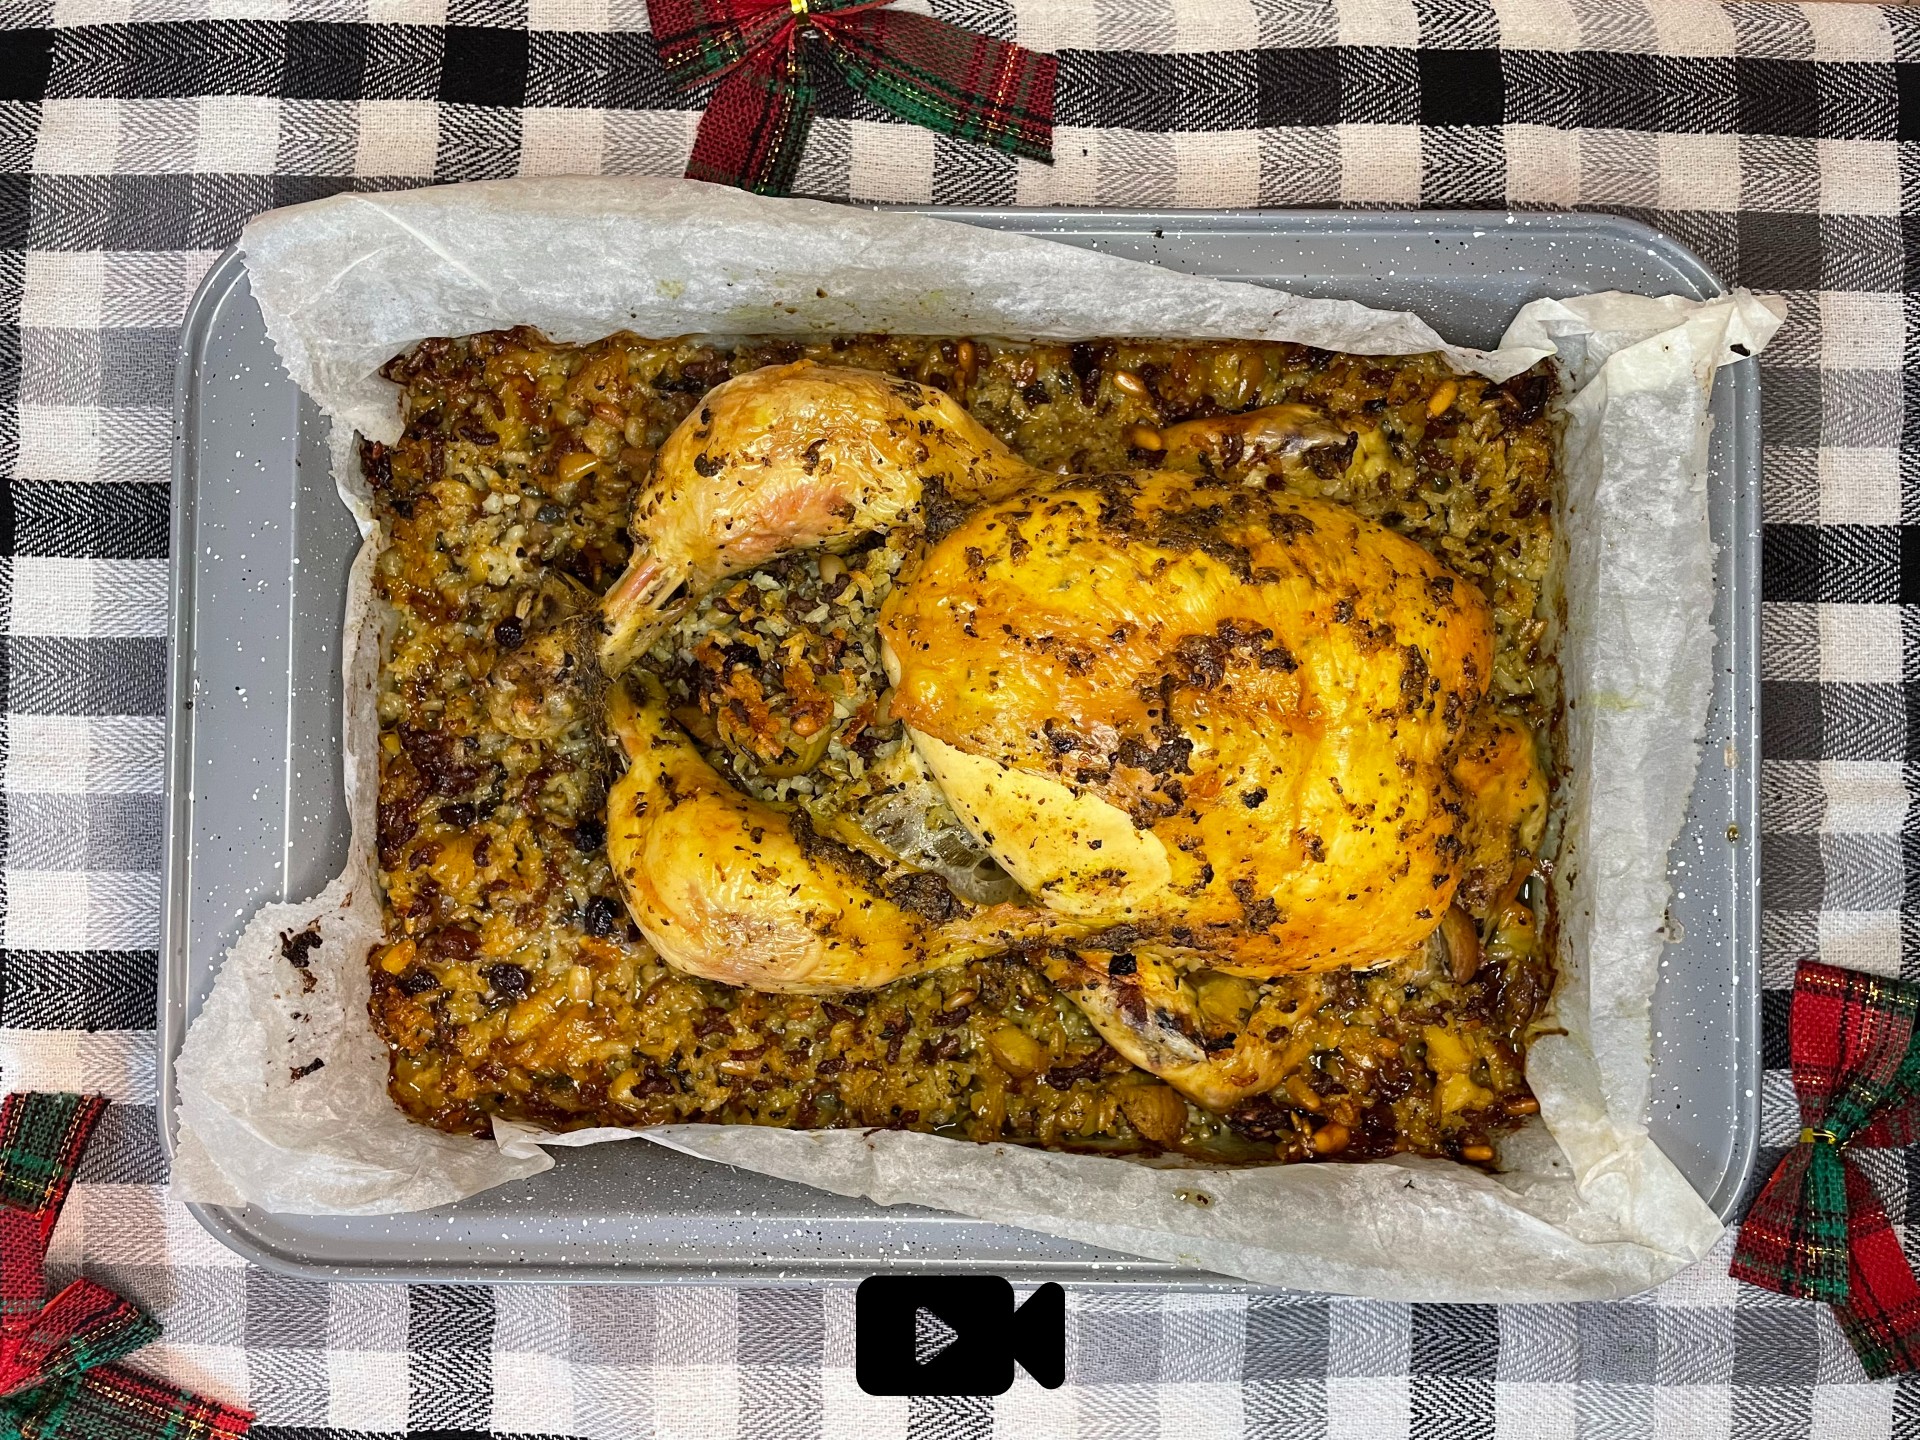 Δοκιμάστε μια υπέροχη συνταγή για το γιορτινό τραπέζι. Γεμιστό κοτόπουλο στο φούρνο με κιμά, κουκουνάρι, κάστανα και σταφίδες. 